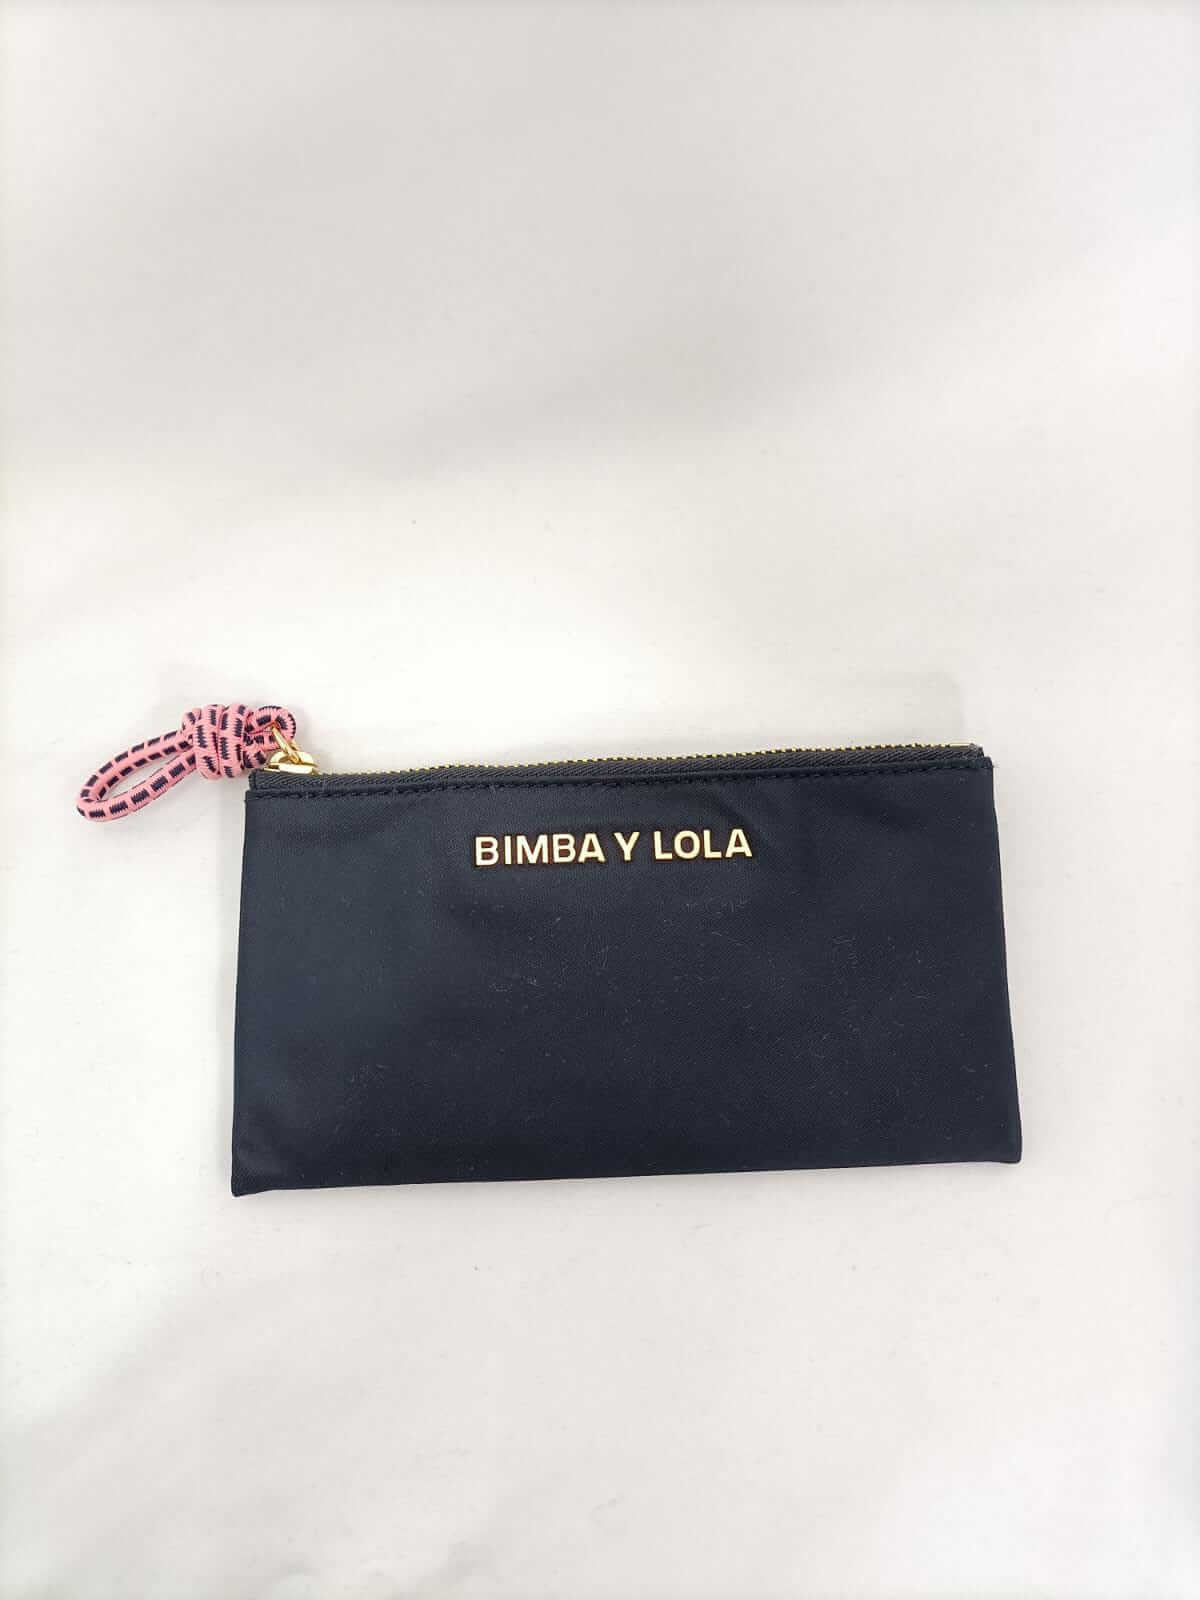 monederos : Bimba Y Lola vestidos de moda  Bimba Y Lola Argentina, Un gran  descuento en todos los Bimba Y Lola vestidos y Bimba Y Lola carteras.